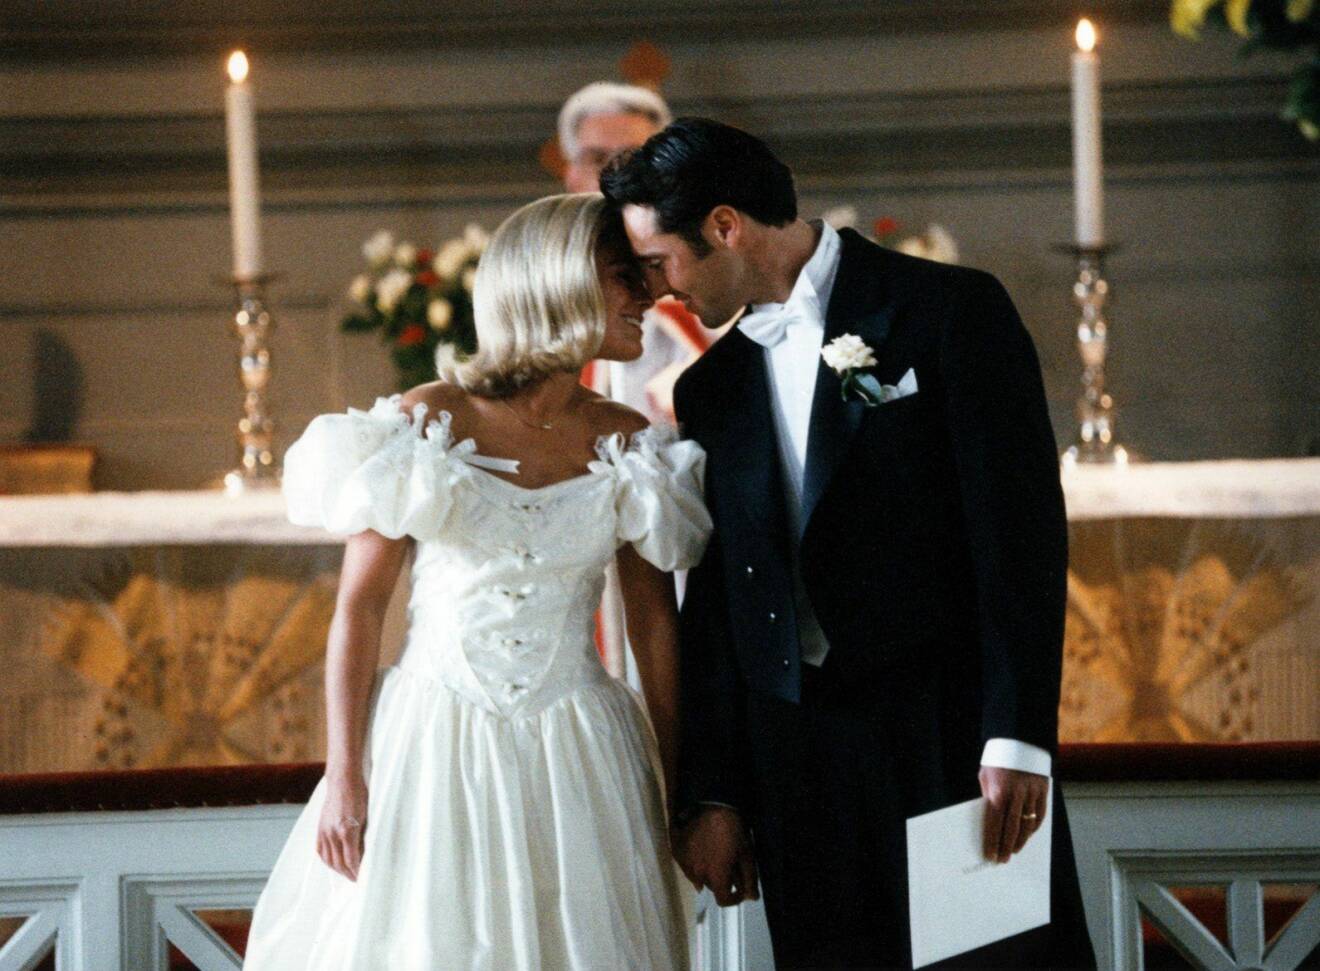 Pernilla Wahlgren och Emilio Ingrosso vid parets bröllop 1993. Pernilla bär en vit klänning med stora puffärmar och kysser Emilio på bilden.